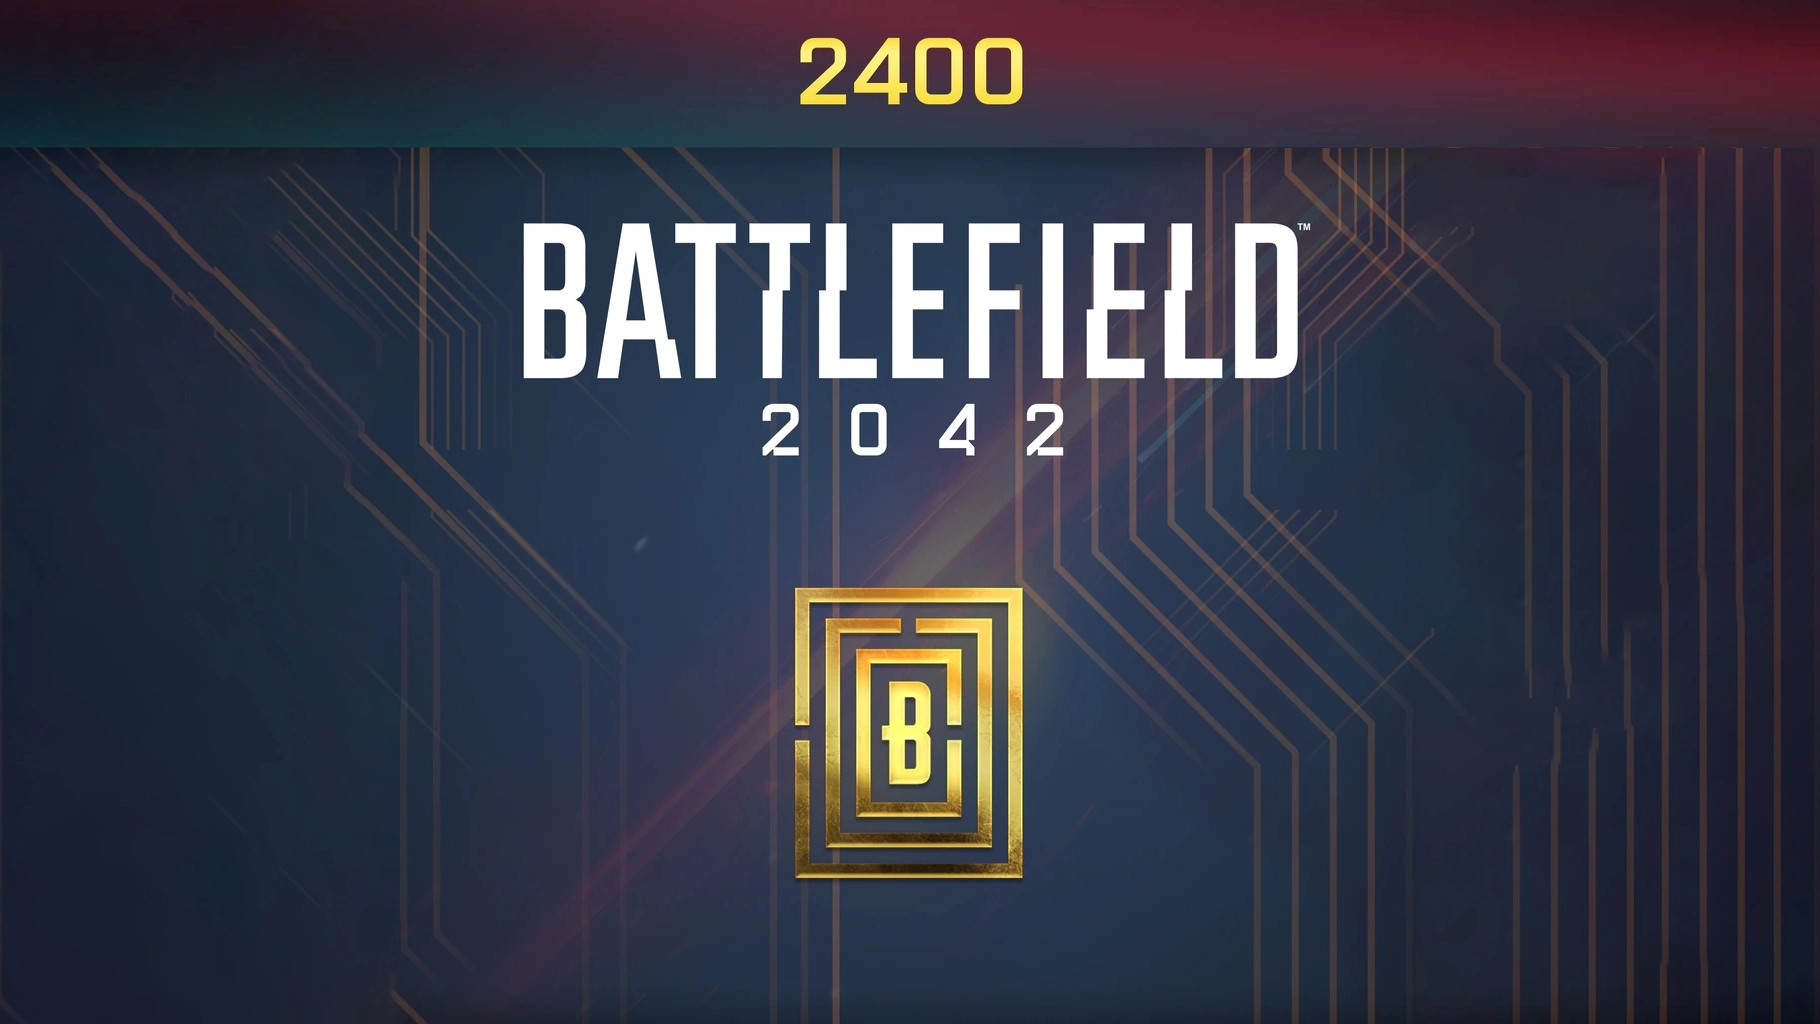 Battlefield 2042 - 2400 BFC Balance XBOX One / Xbox Series X|S CD Key $20.9